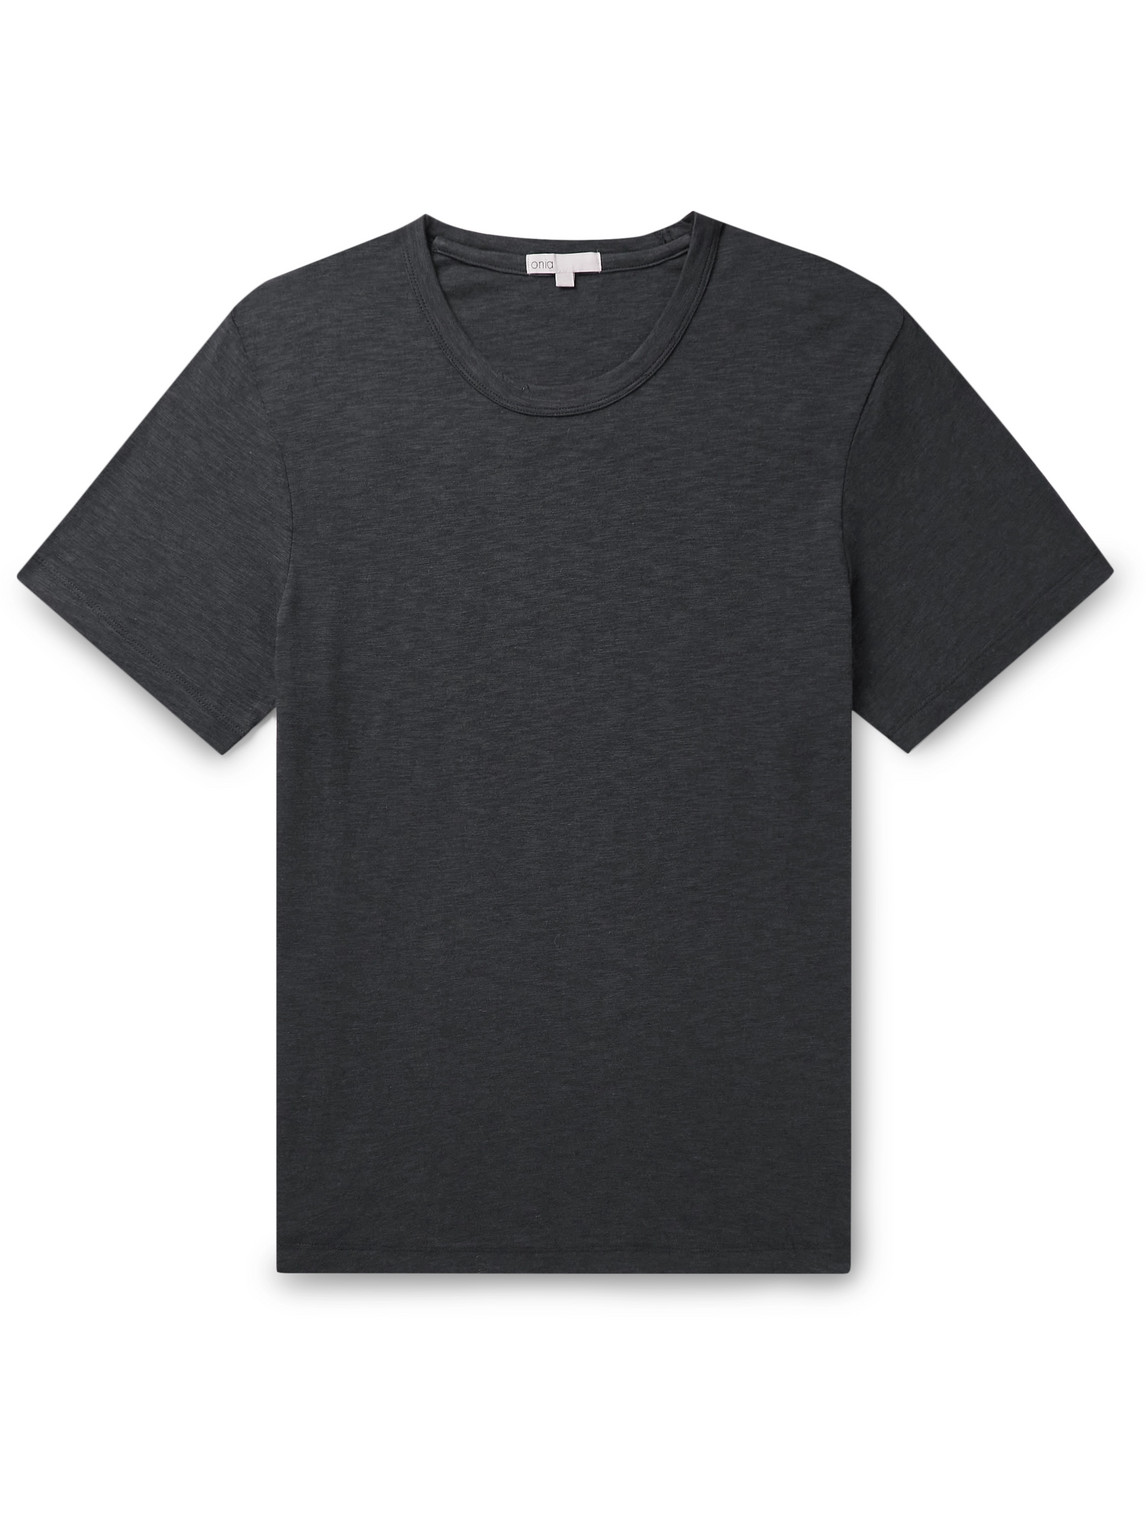 Onia - Cotton-Blend Jersey T-Shirt - Men - Gray - S von Onia